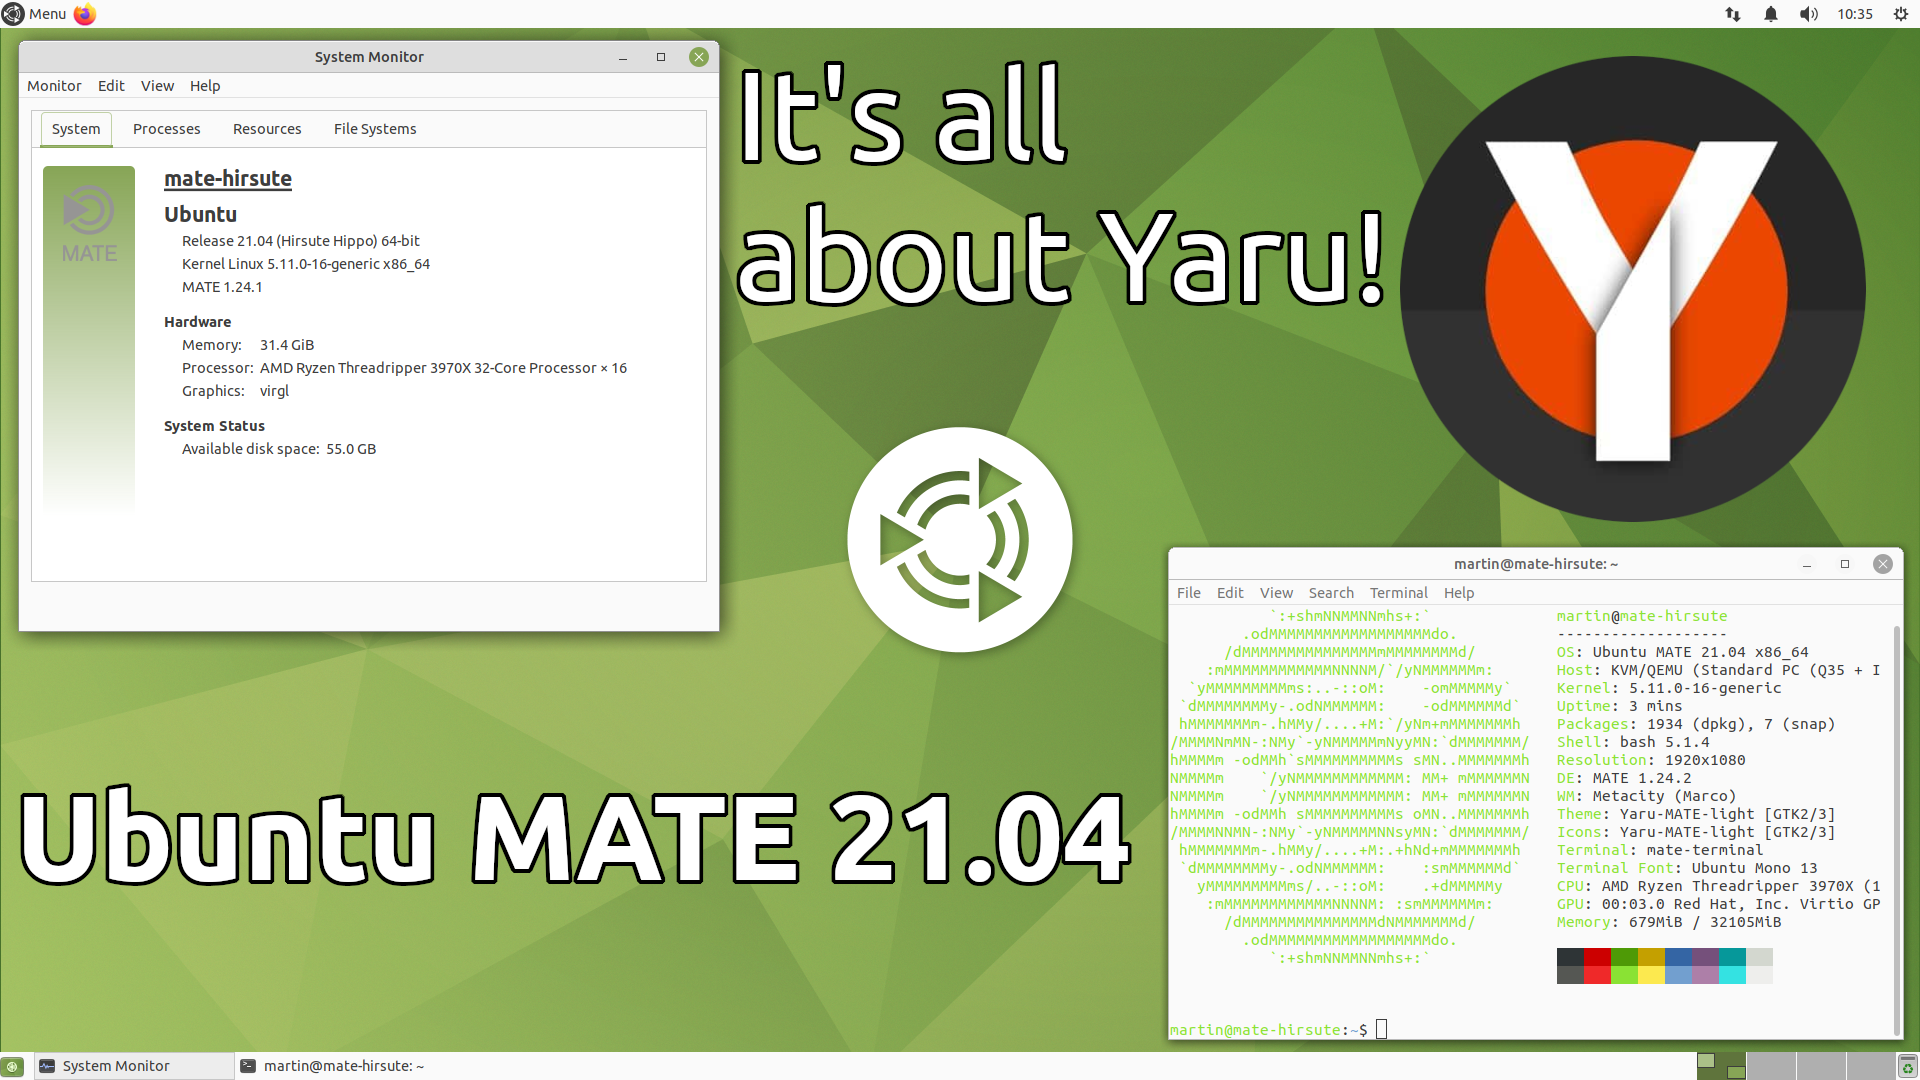 Ubuntu MATE 21.04